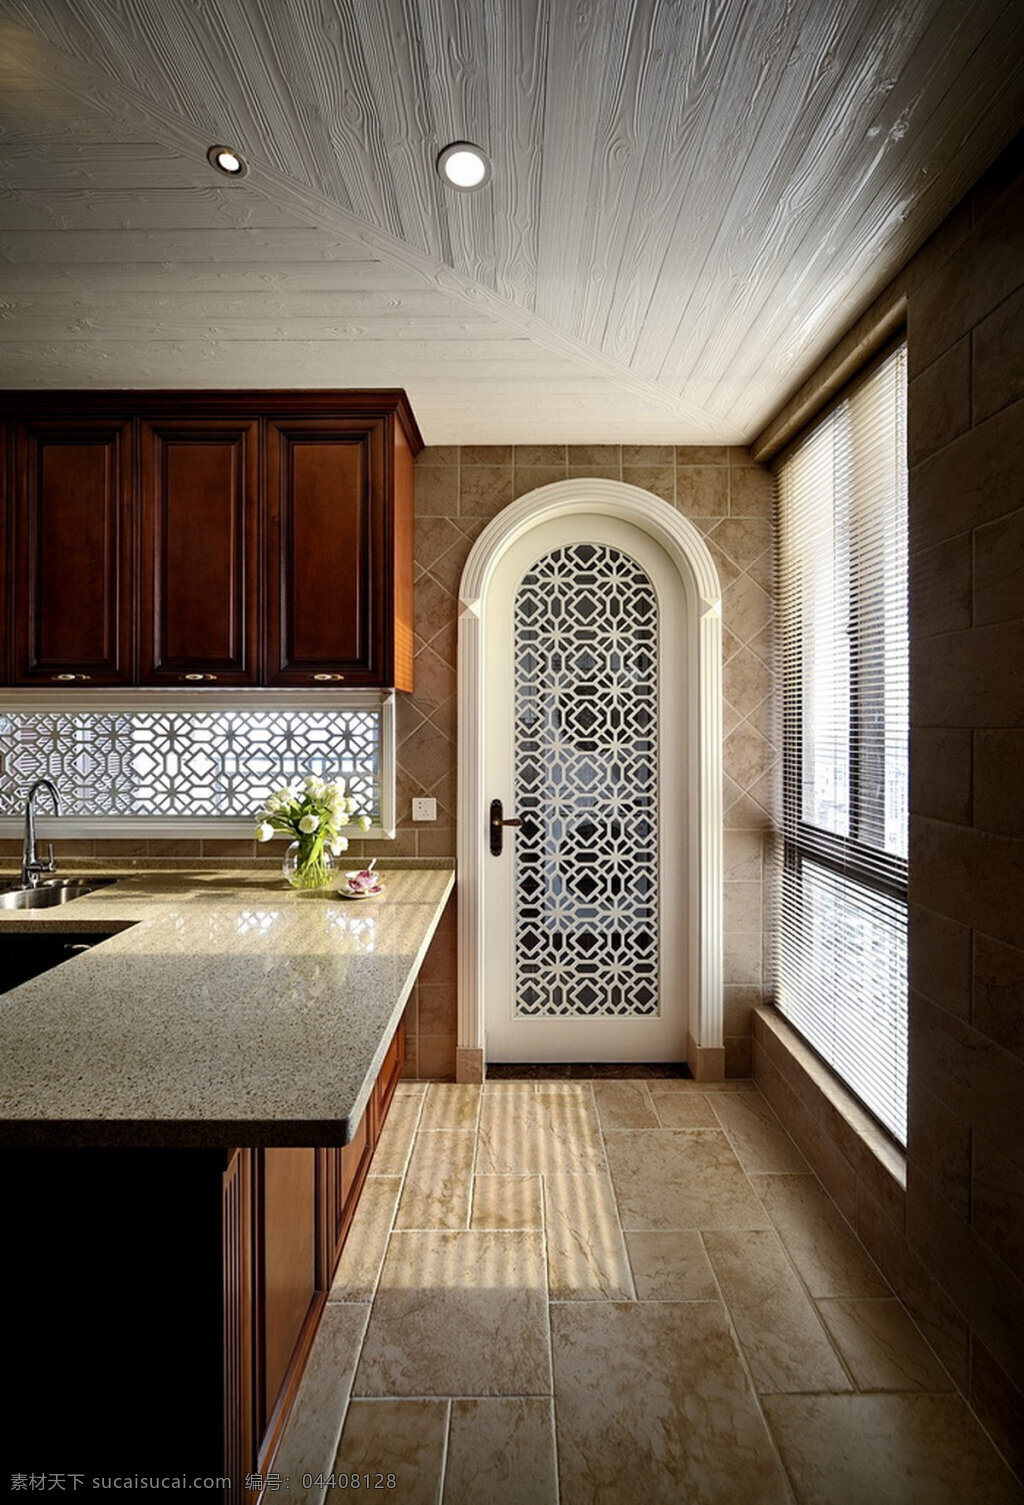 现代 简约 风 室内设计 厨房 钩花 门 效果图 吧台 白色 调 家装